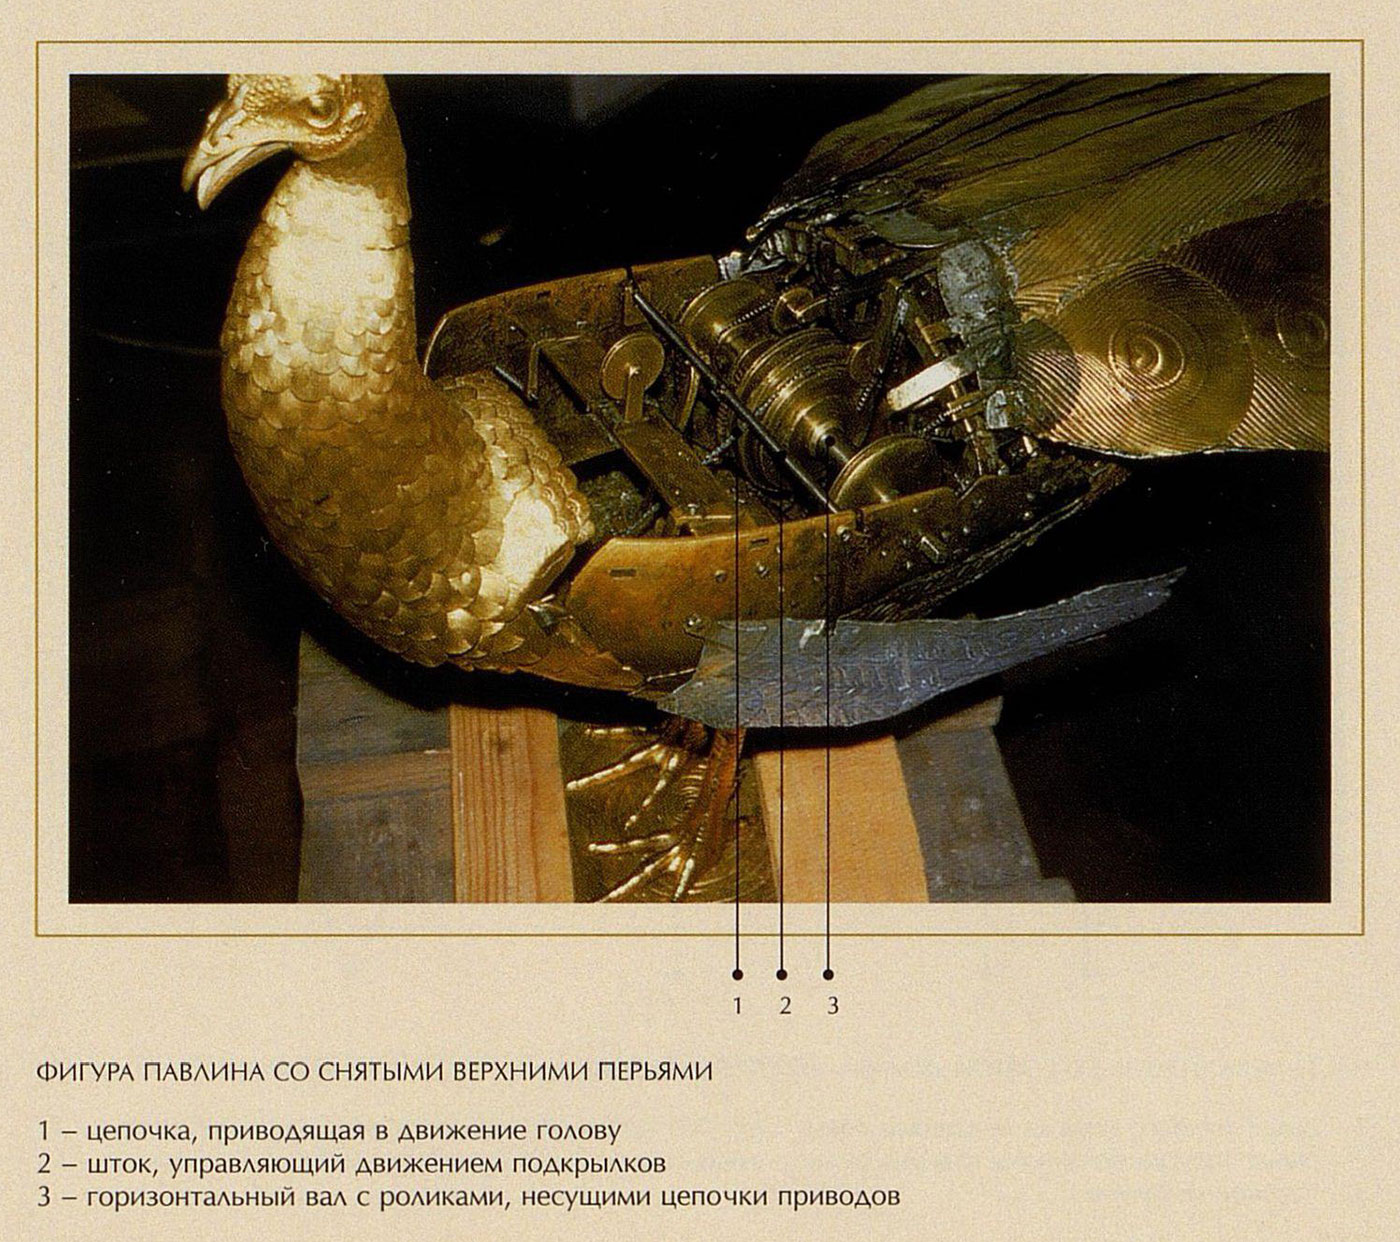 Фигура павлина со снятыми верхними перьями часов "Павлин" в Эрмитаже